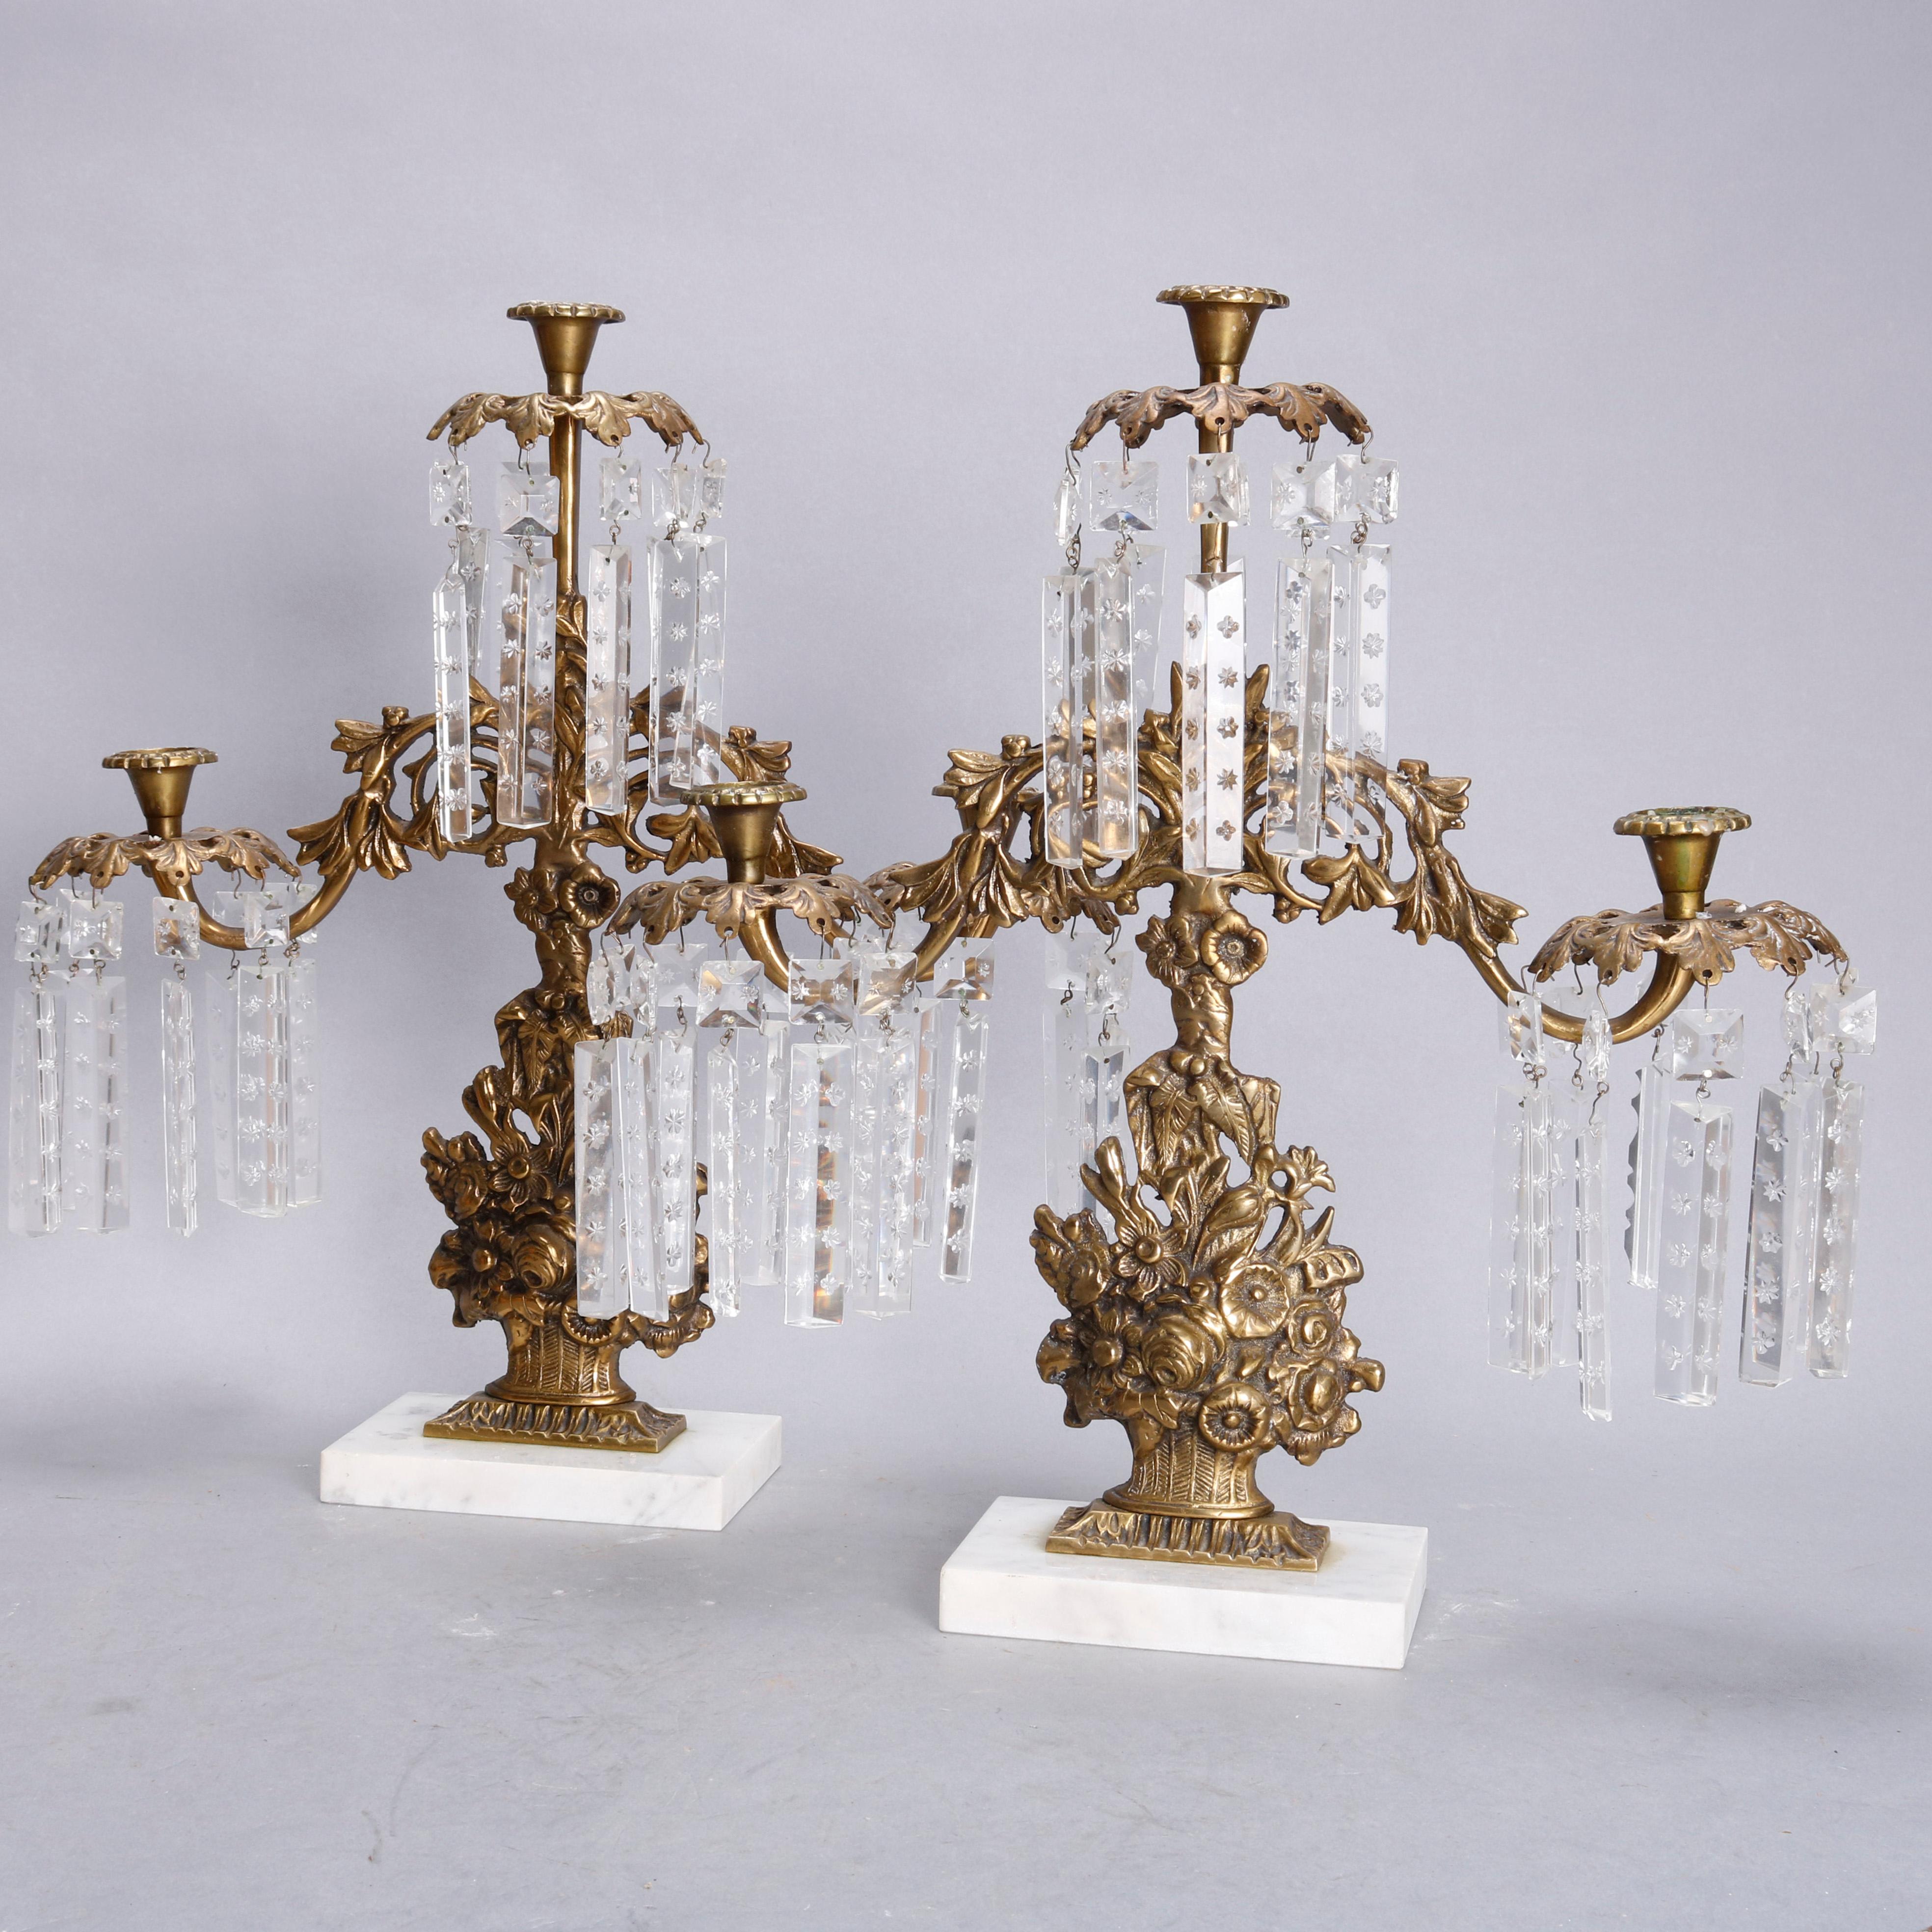 Cast Brass, Marble & Crystal Panier de Fleurs Girandole Candelabra Set, circa 1880